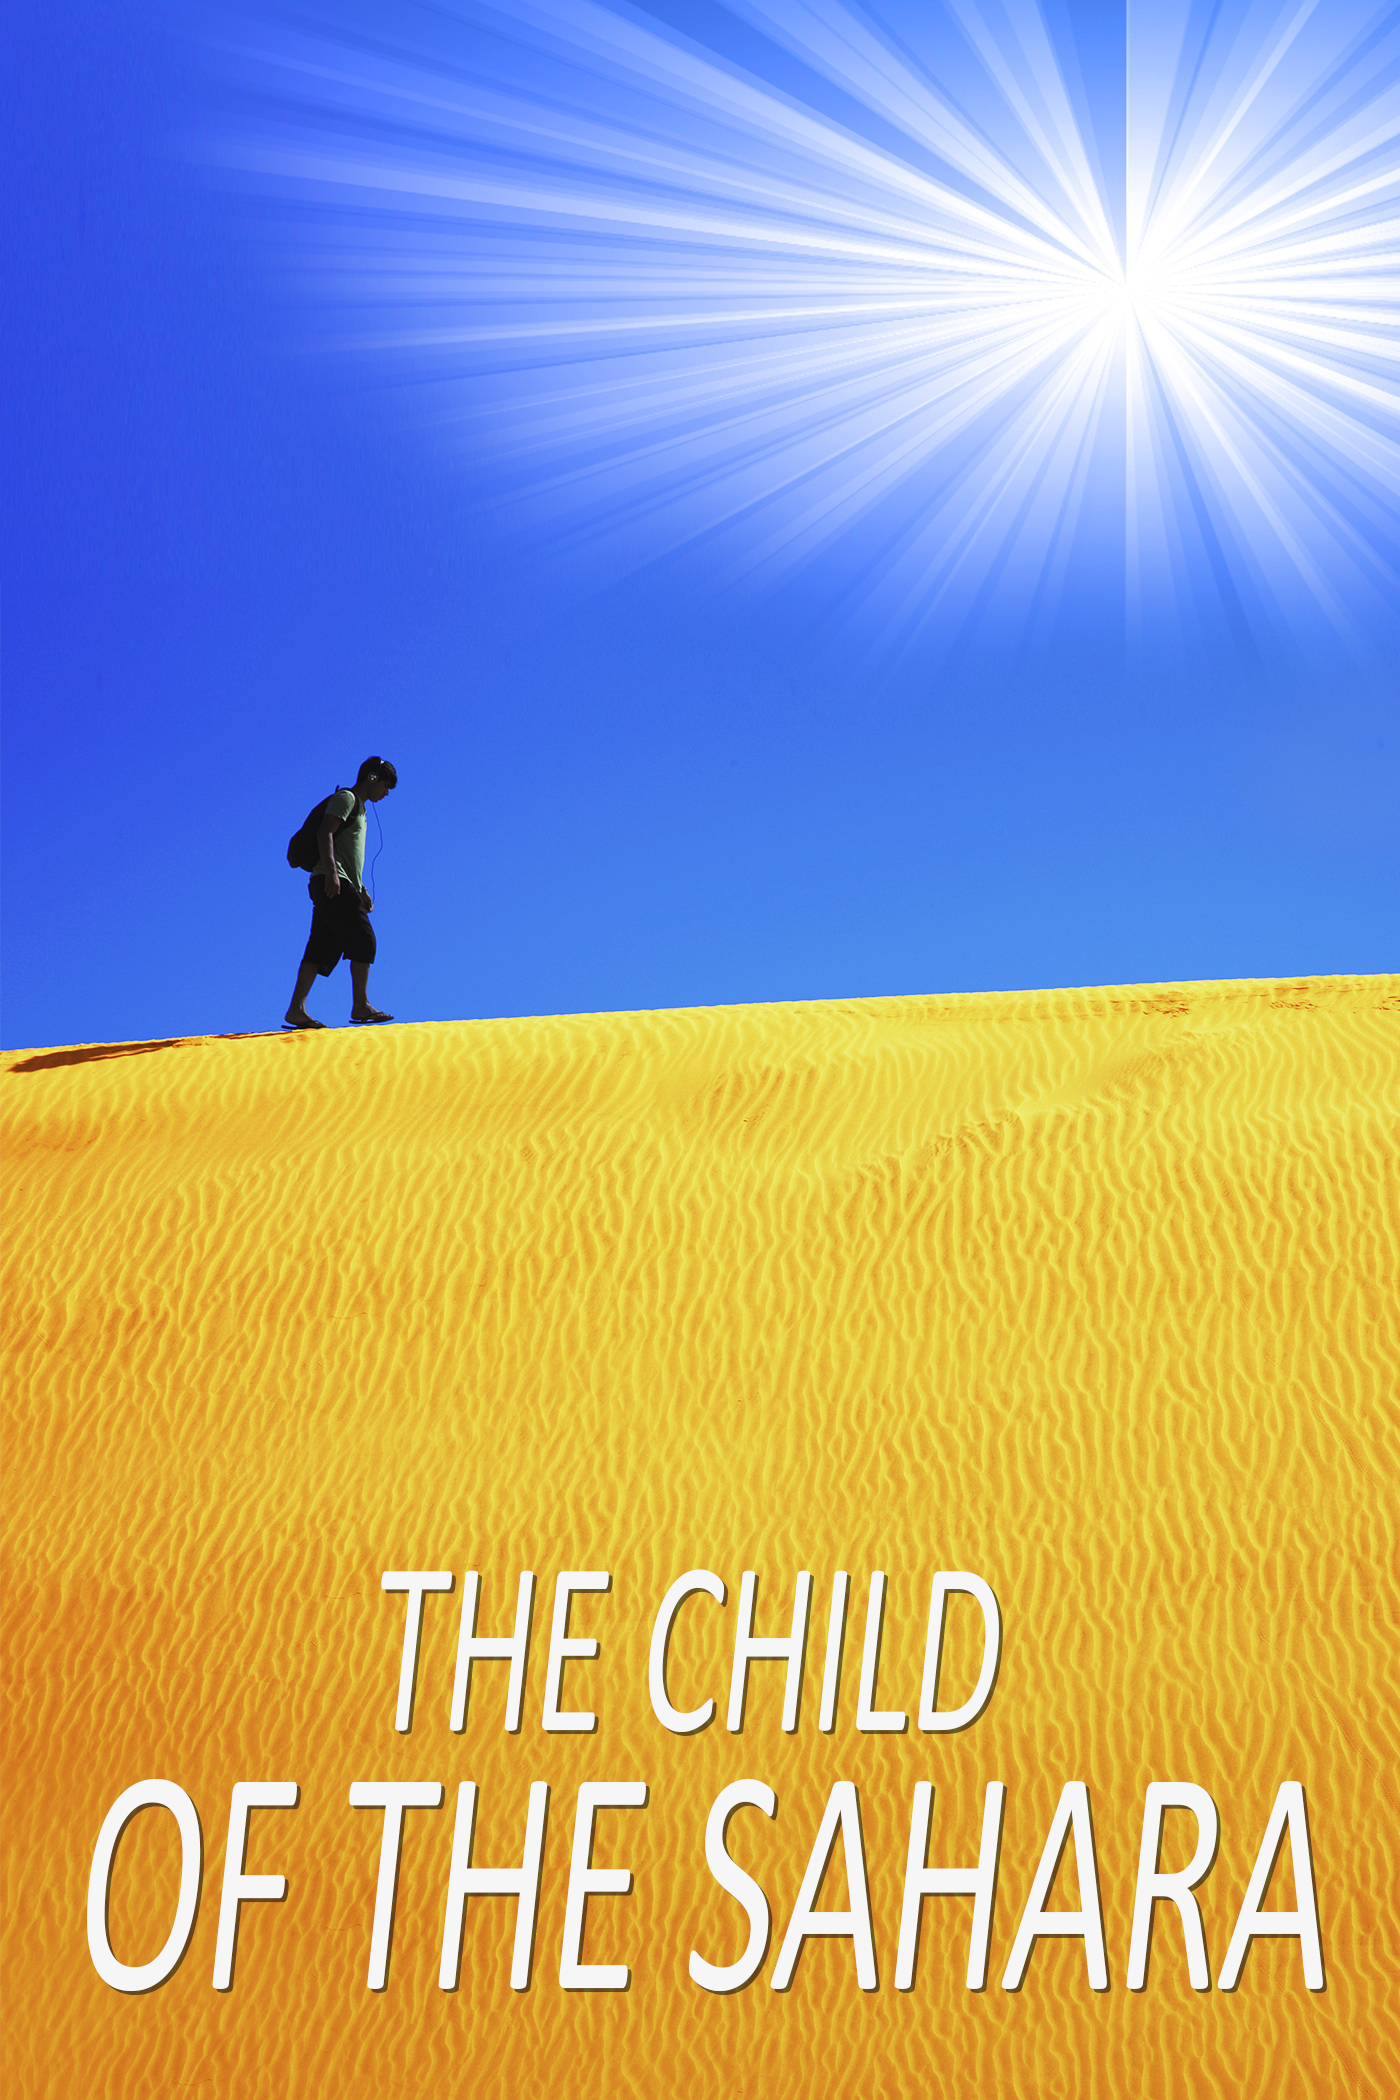 The Child of the Sahara (2020) Screenshot 1